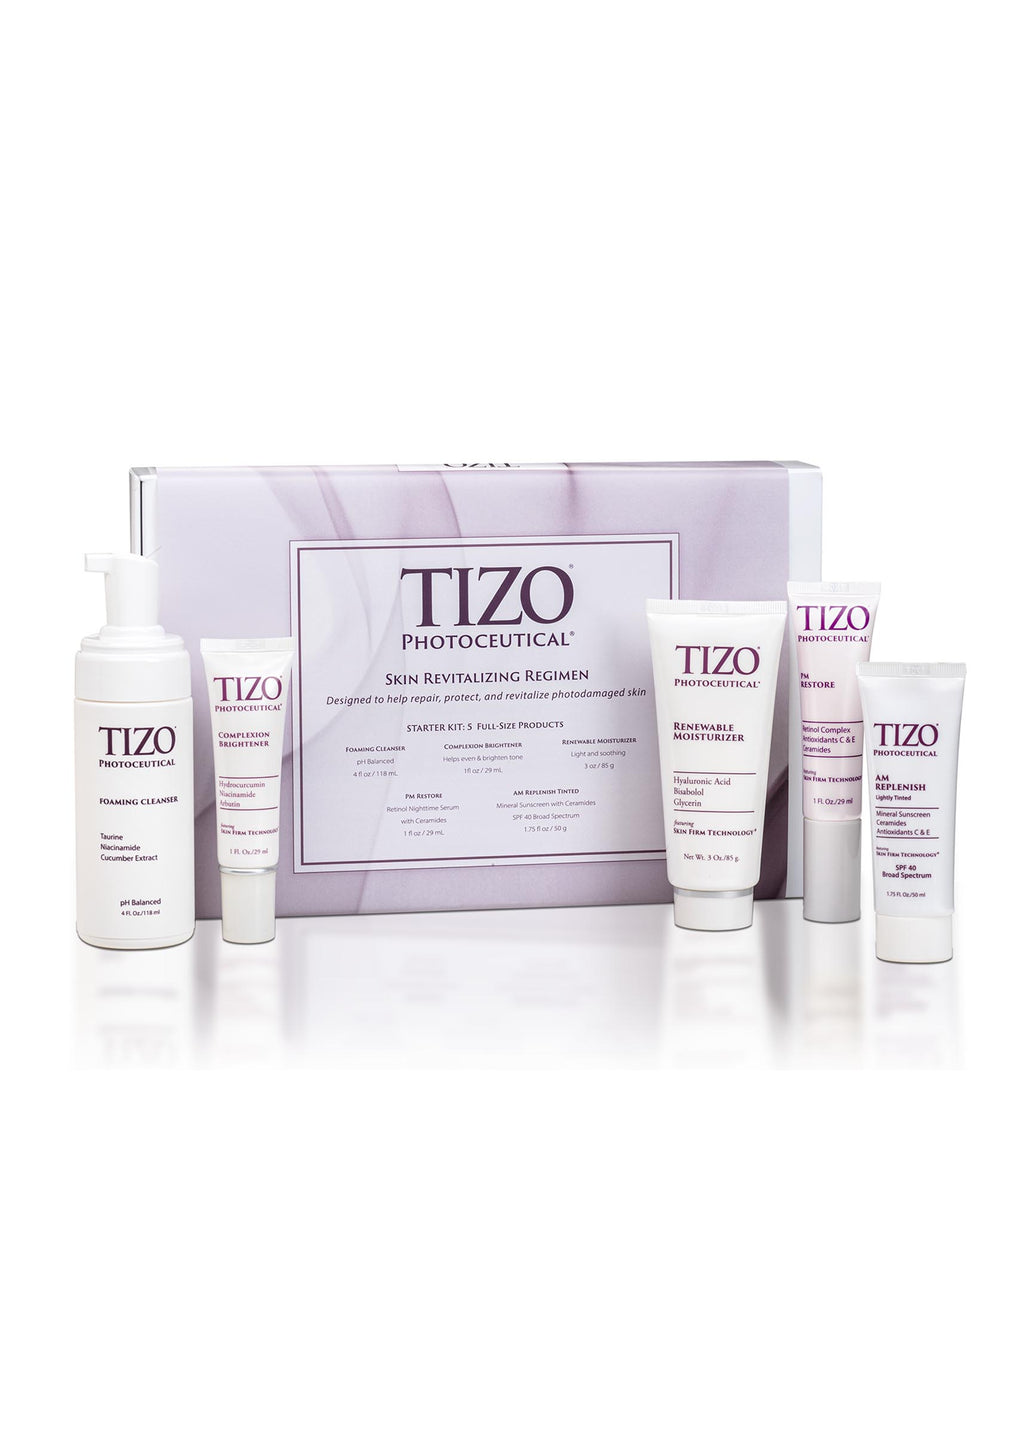 TiZO Photoceutical skin revitalizing kit